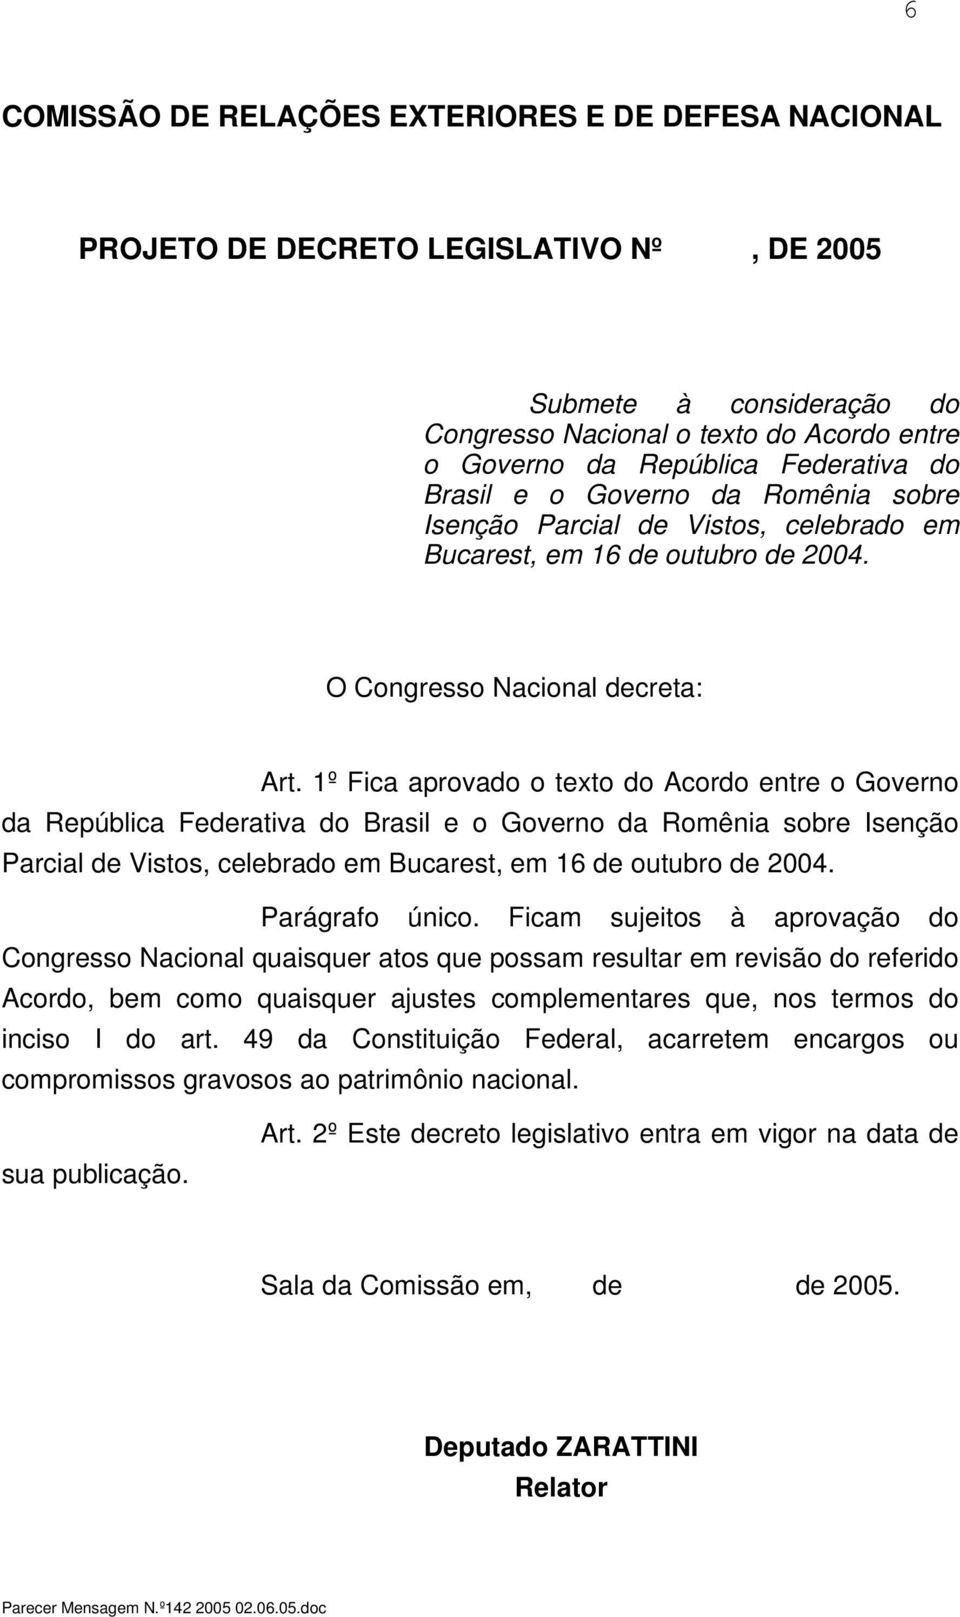 1º Fica aprovado o texto do Acordo entre o Governo da República Federativa do Brasil e o Governo da Romênia sobre Isenção Parcial de Vistos, celebrado em Bucarest, em 16 de outubro de 2004.